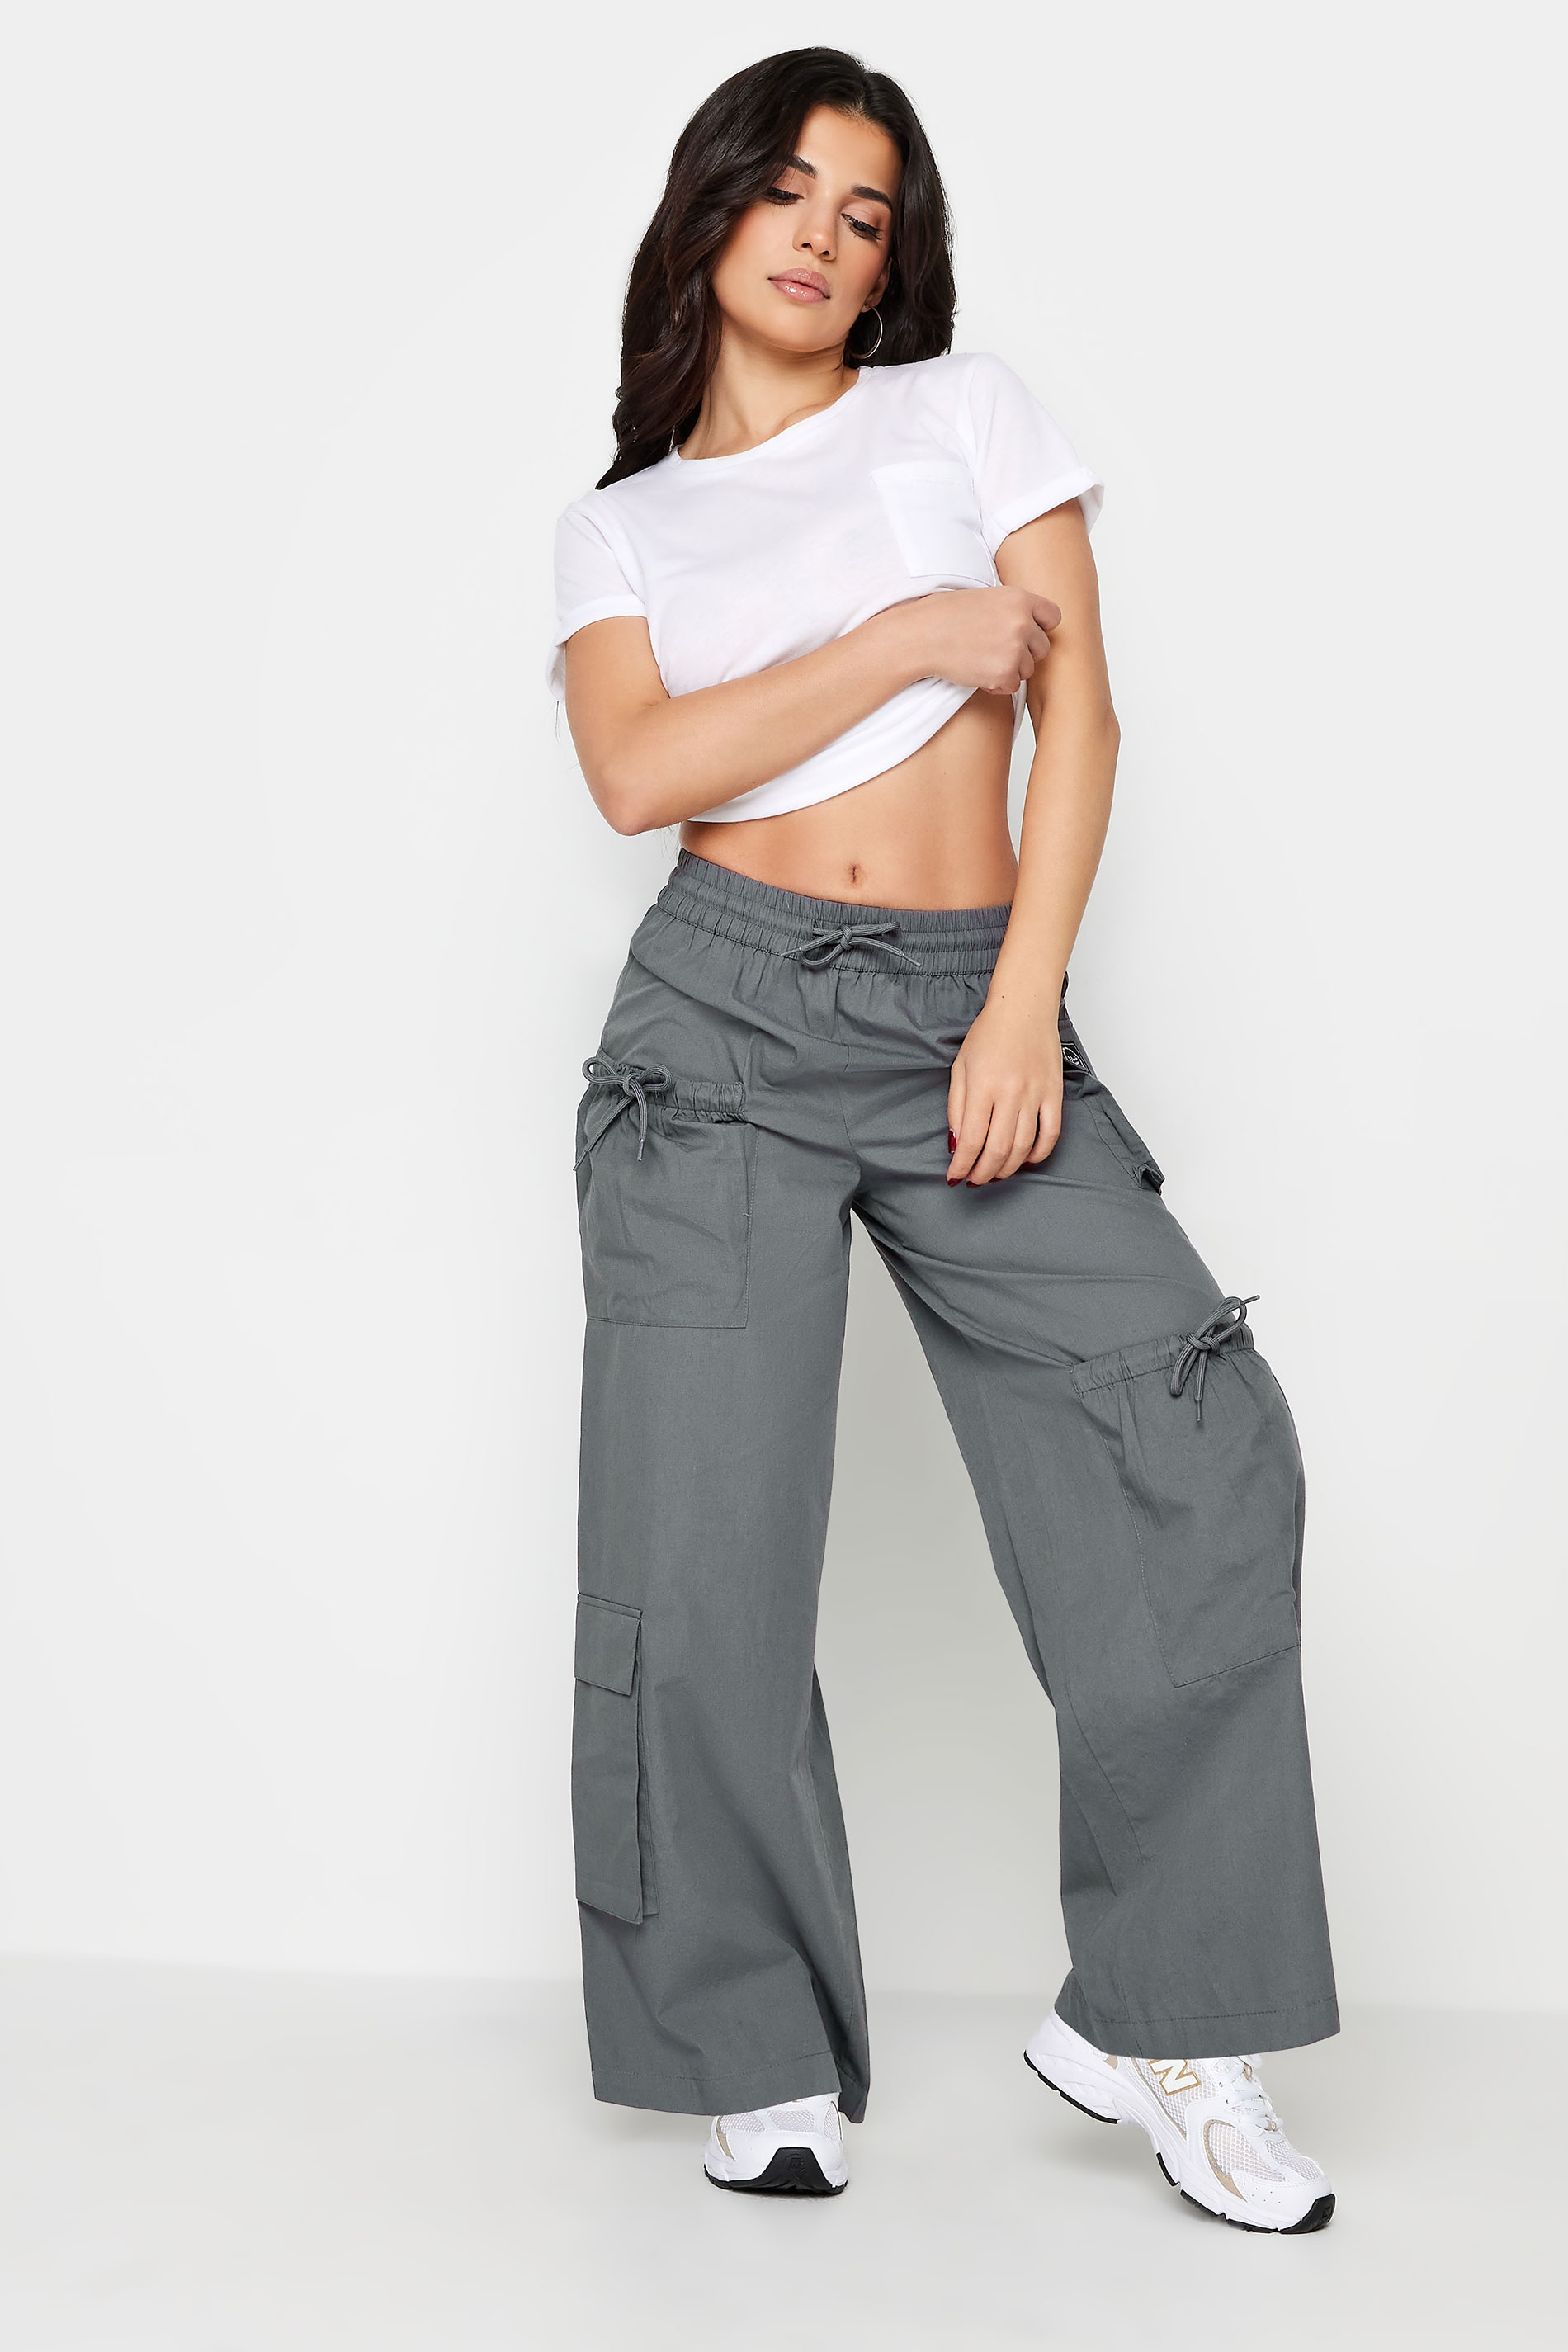 PixieGirl Grey Pocket Detail Cargo Trousers | PixieGirl  3